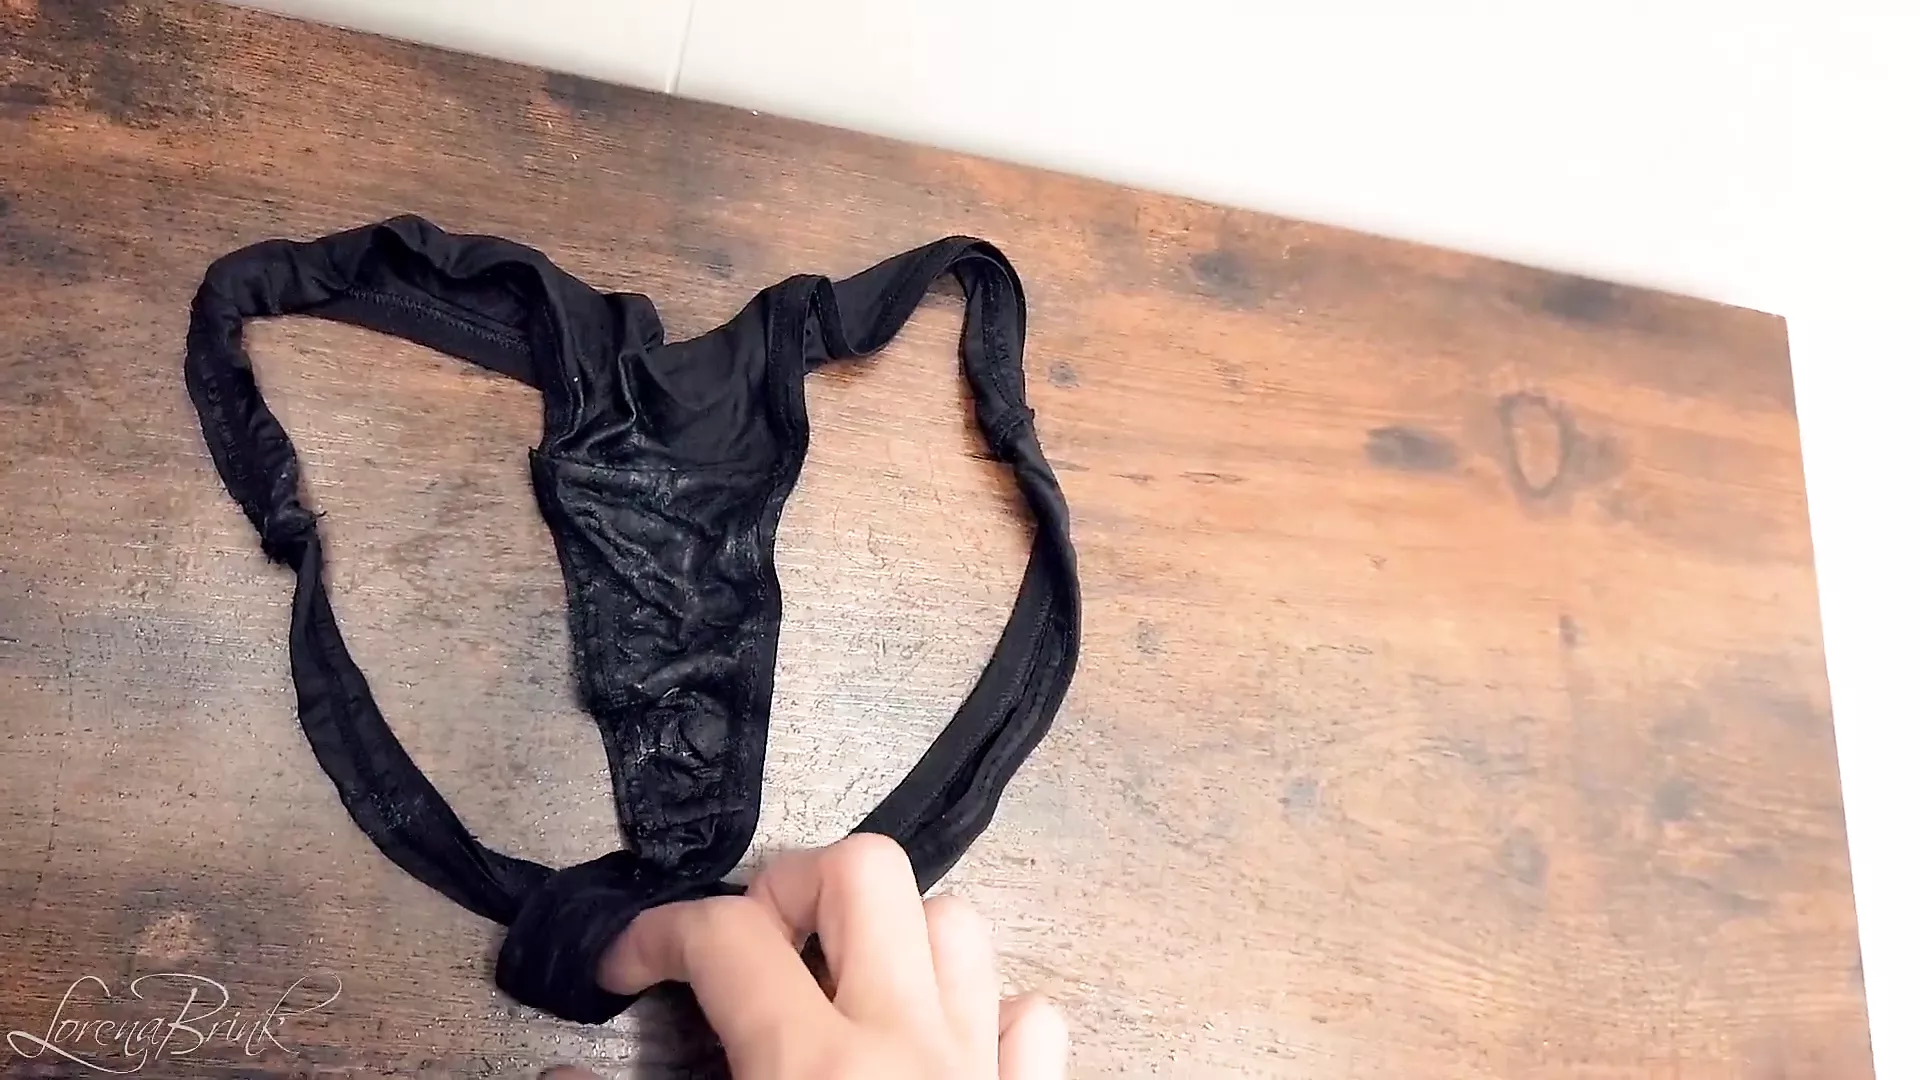 Wet Panties Spy Cam - Fitting Room Dirtying Store's Pants Leaving Panties | xHamster